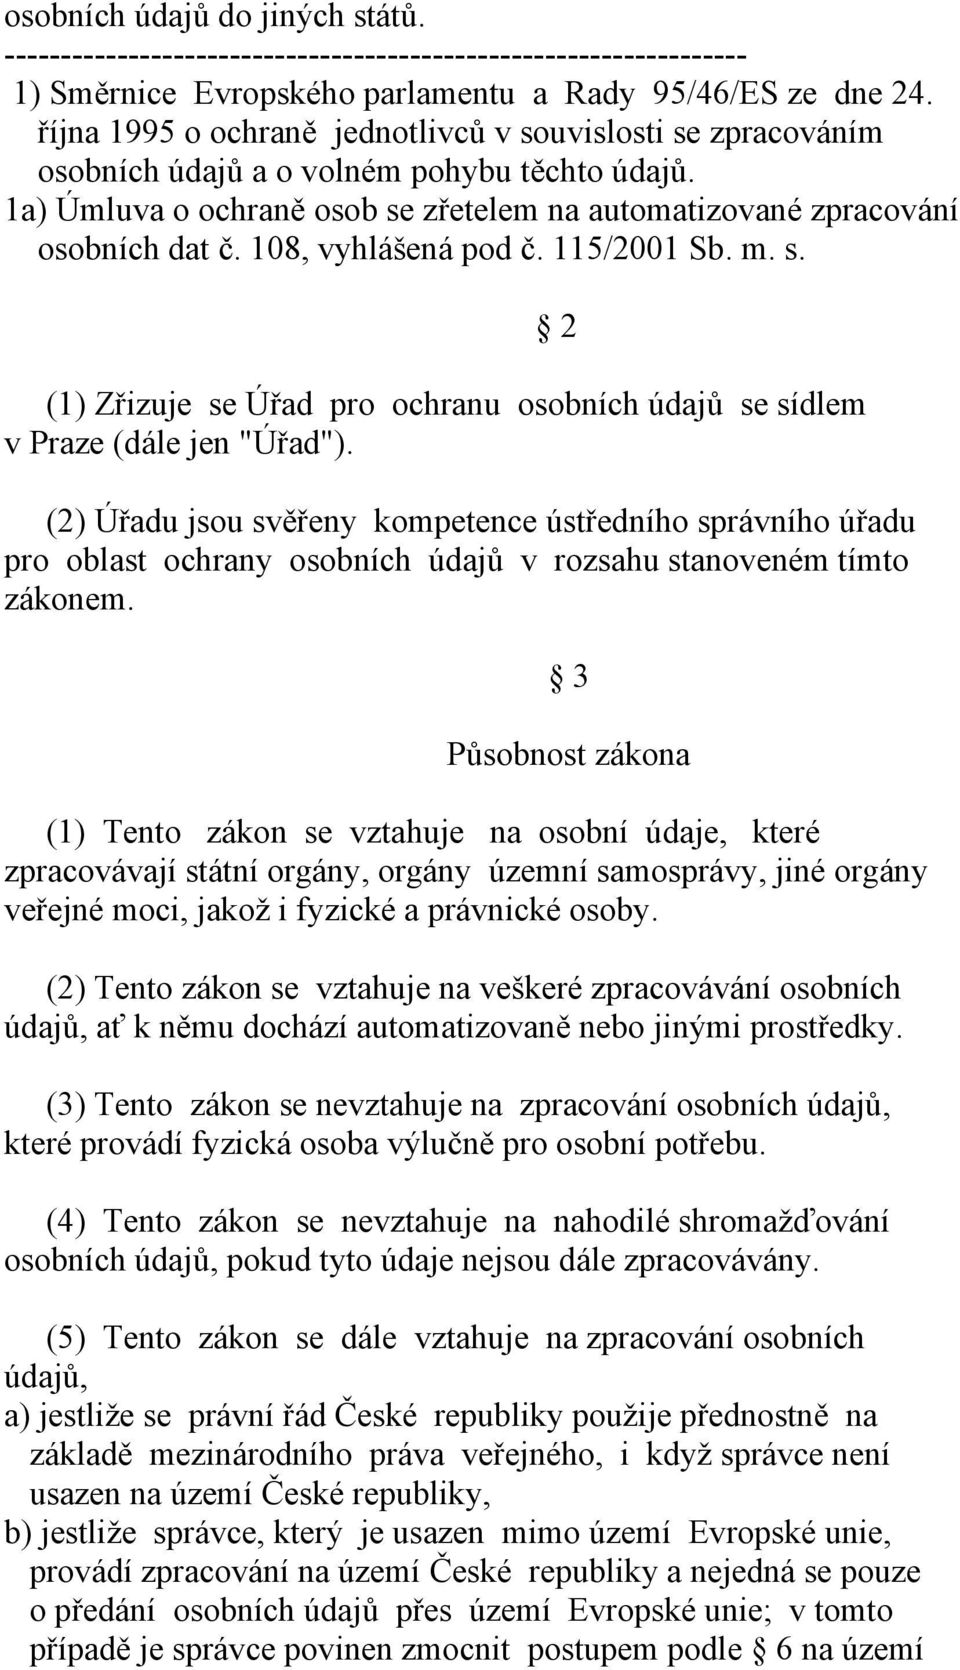 108, vyhlášená pod č. 115/2001 Sb. m. s. (1) Zřizuje se Úřad pro ochranu osobních údajů se sídlem v Praze (dále jen "Úřad").